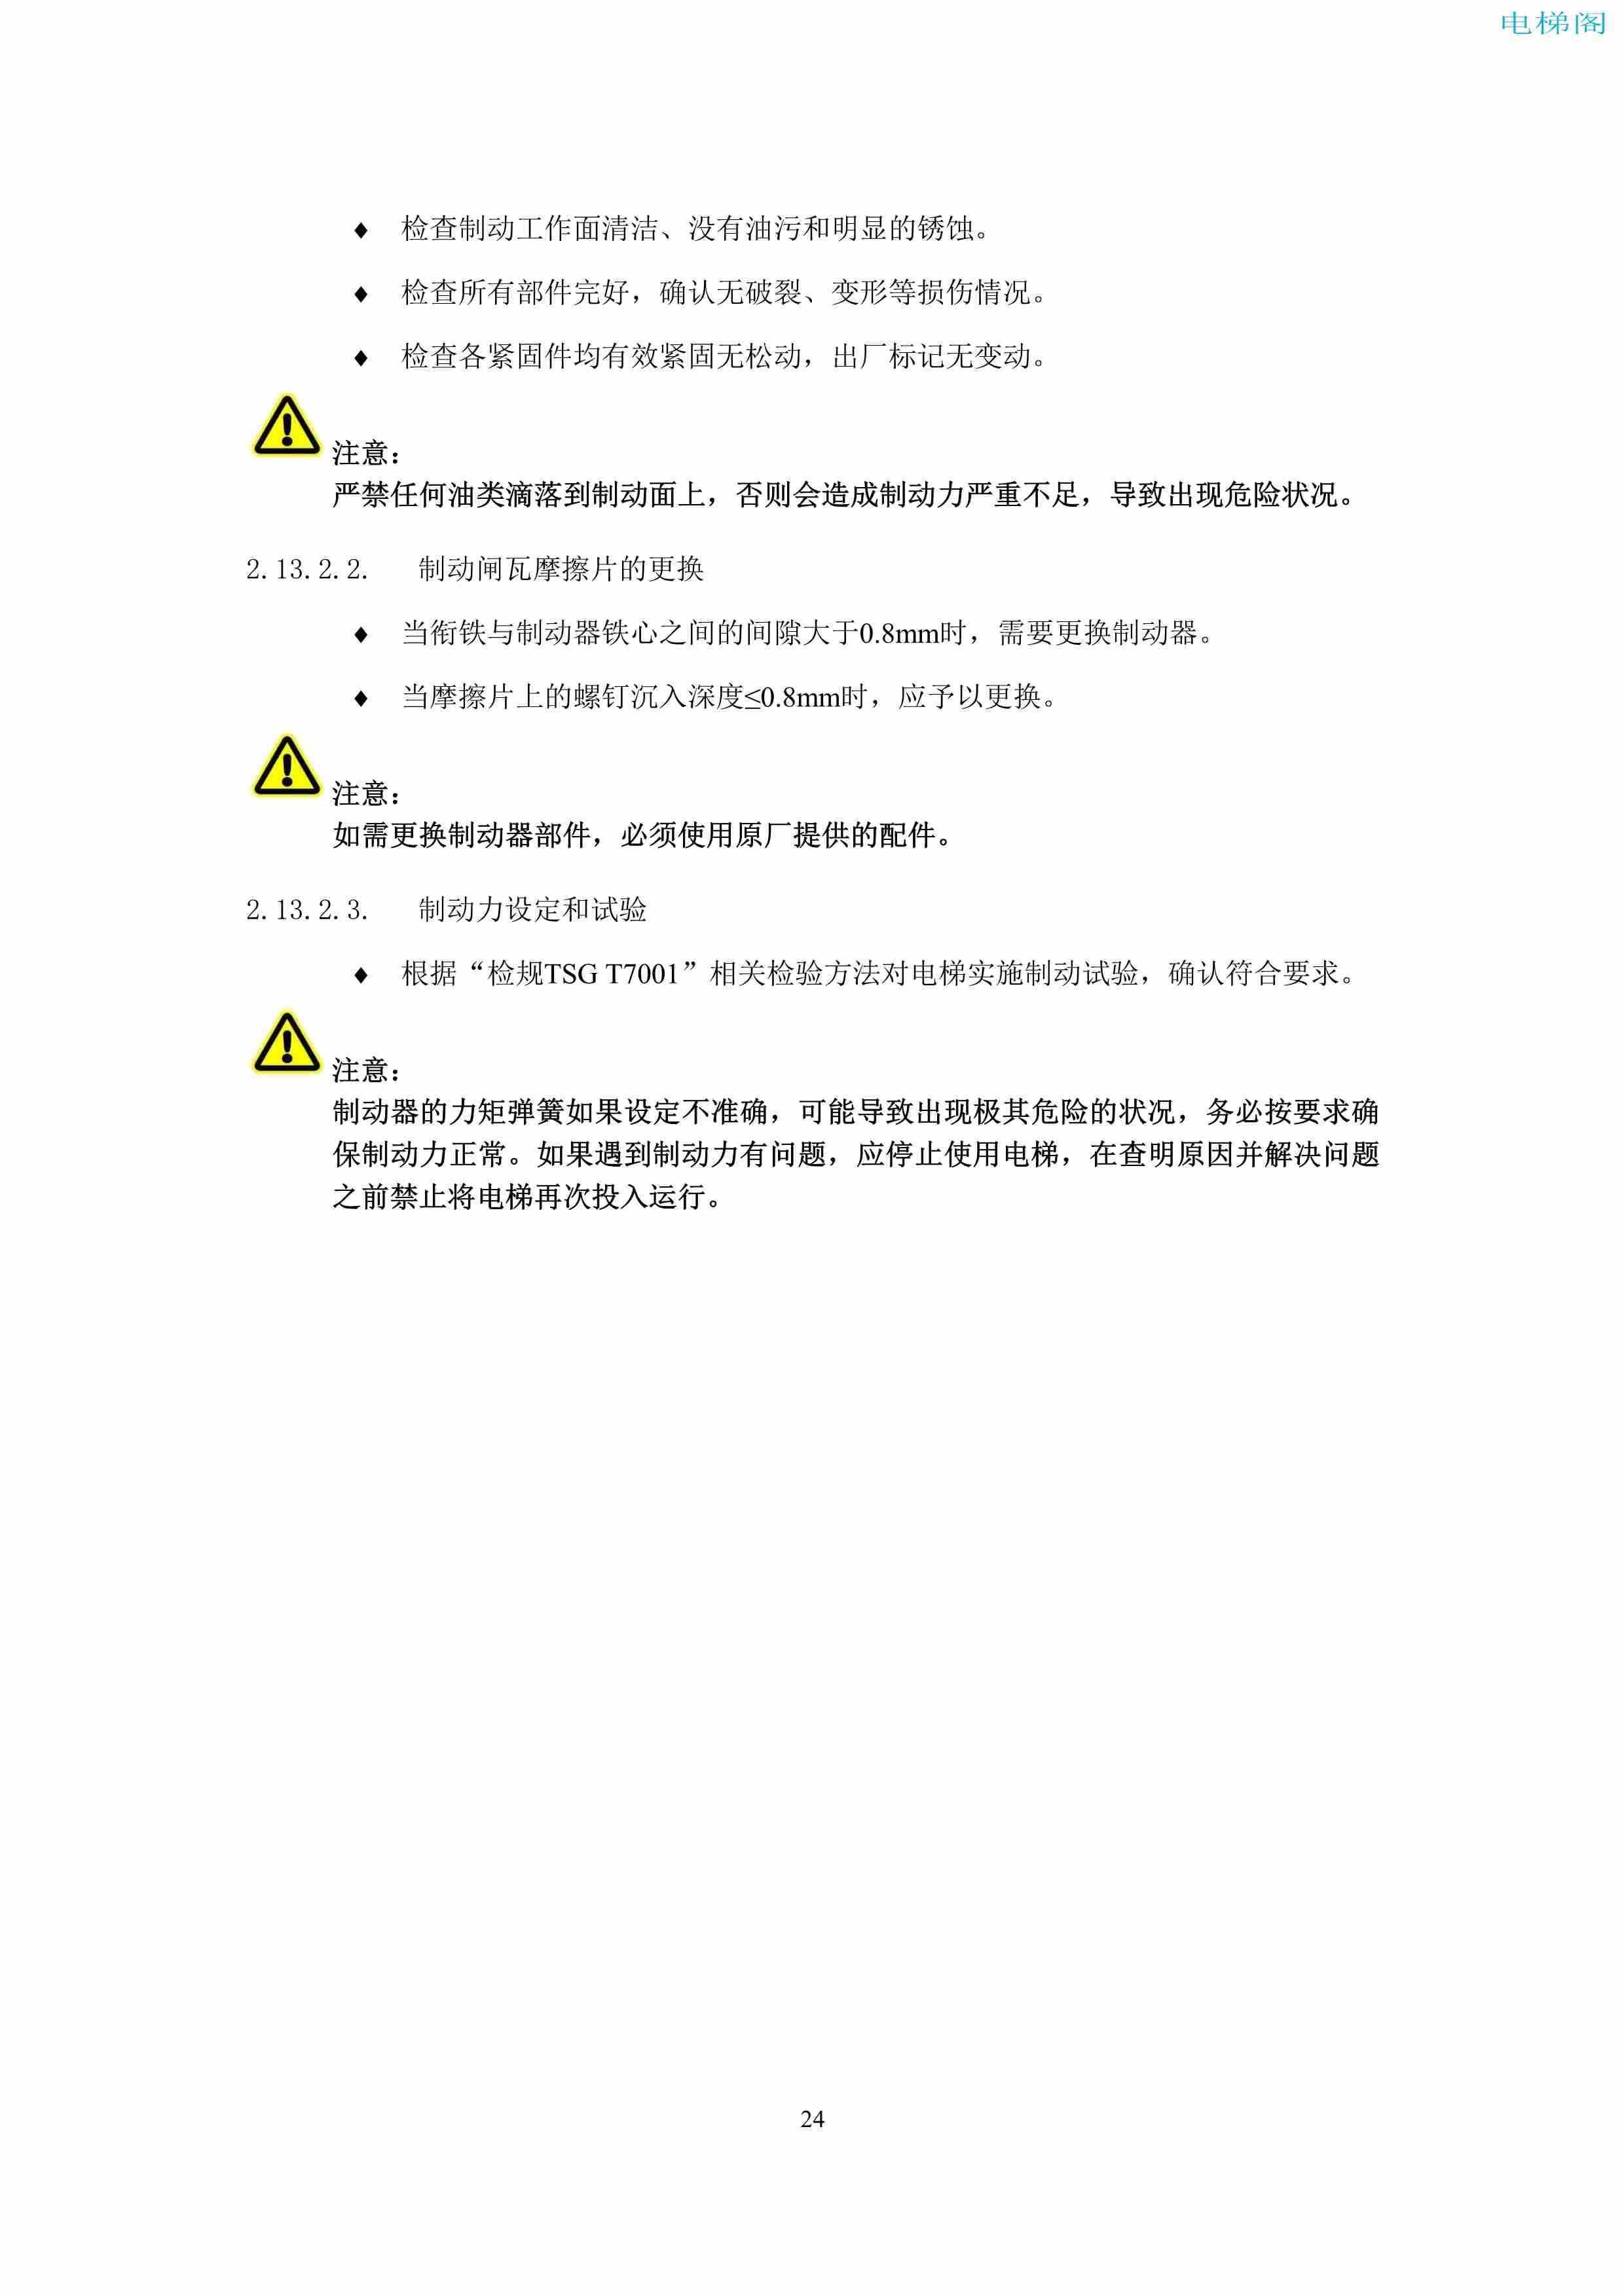 上海三菱电梯有限公司电梯制动器维护作业要领汇编_26.jpg